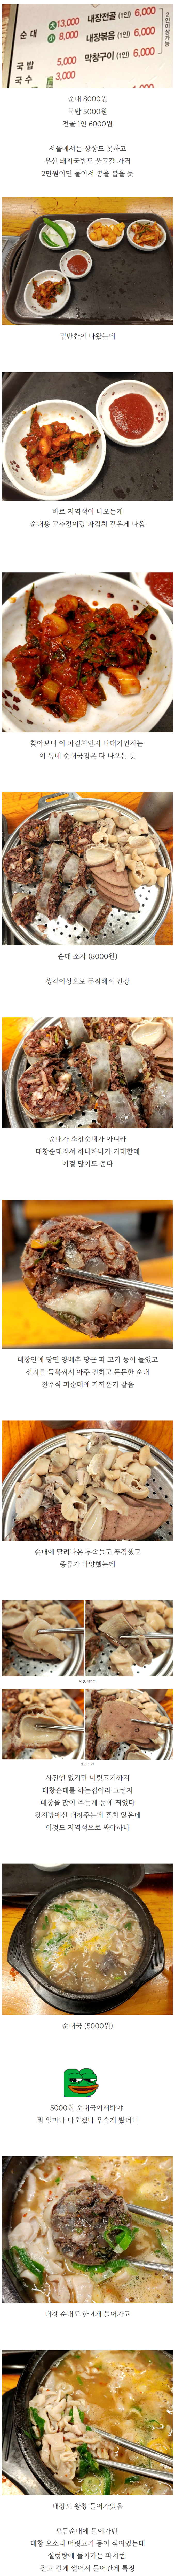 대전에서 먹은거중 제일 특색있던 음식.jpg